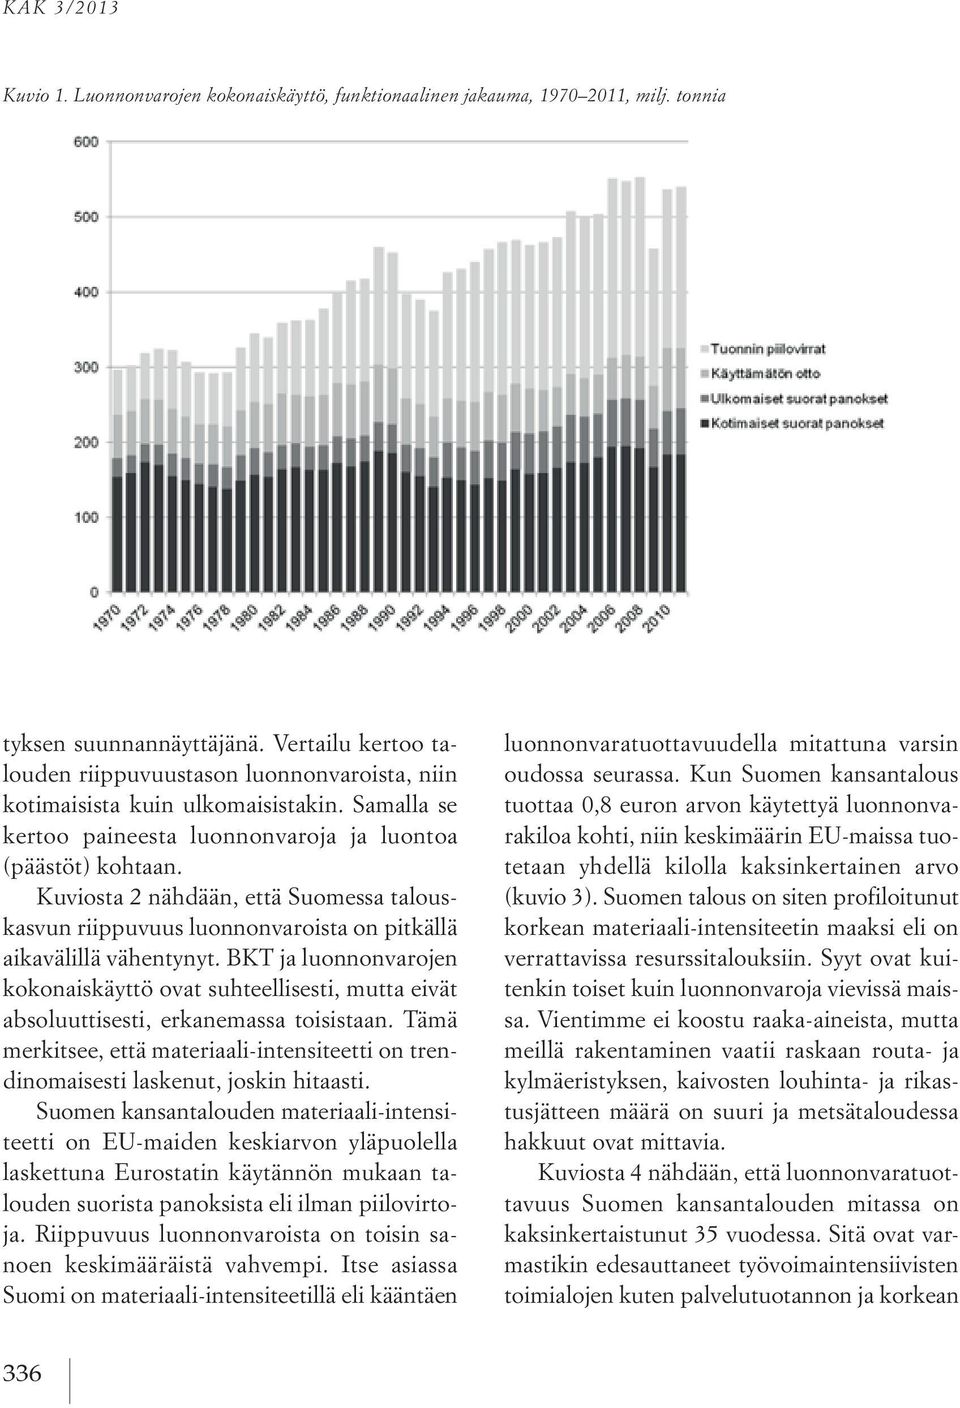 Kuviosta 2 nähdään, että Suomessa talouskasvun riippuvuus luonnonvaroista on pitkällä aikavälillä vähentynyt.